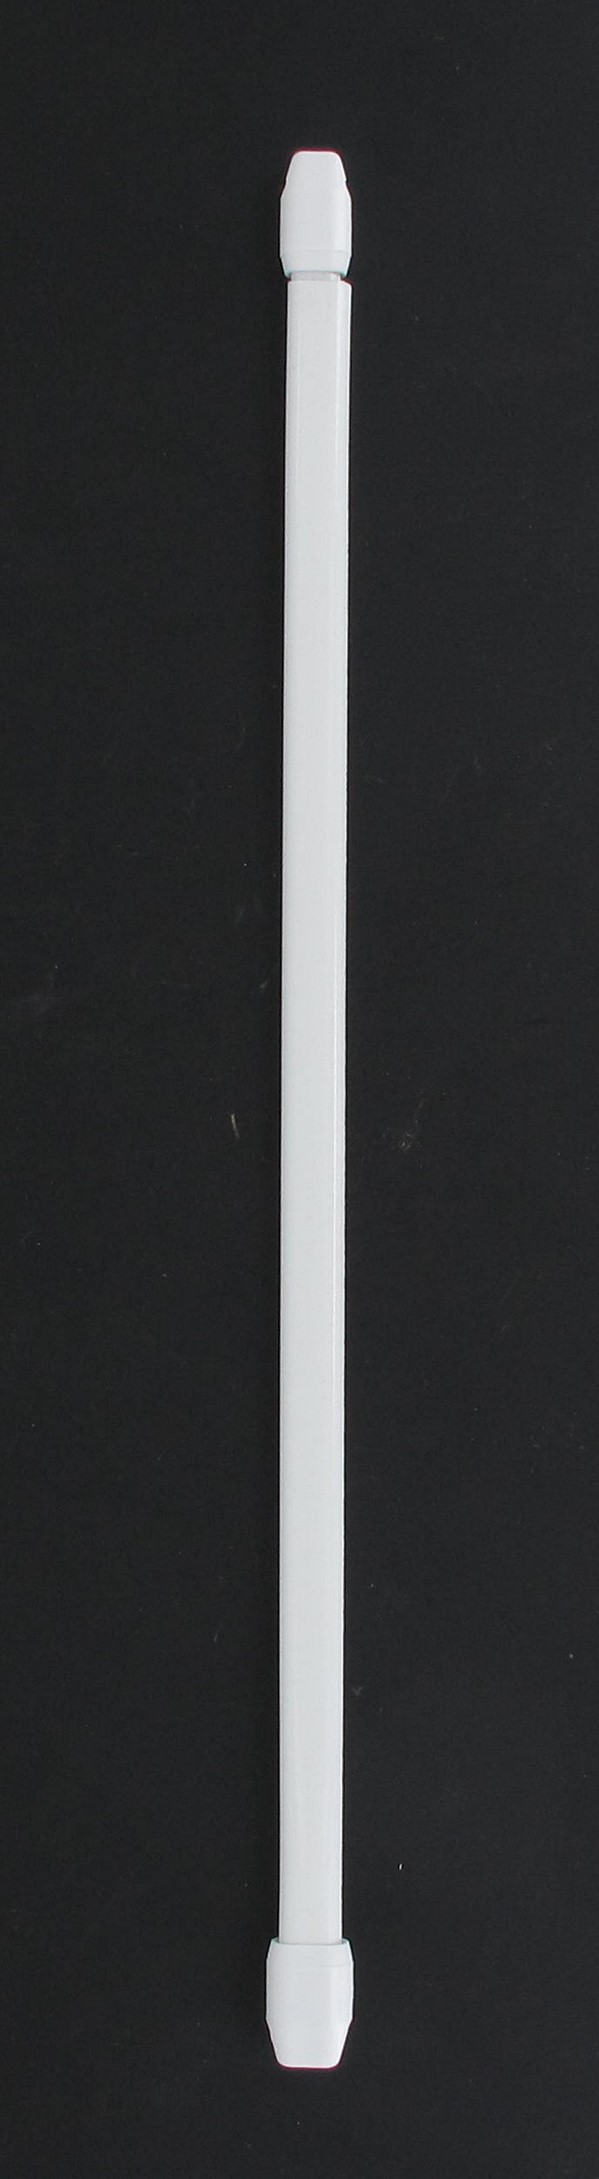 Lot de 2 tringles extensible ovale 110 x 140 cm - blanc